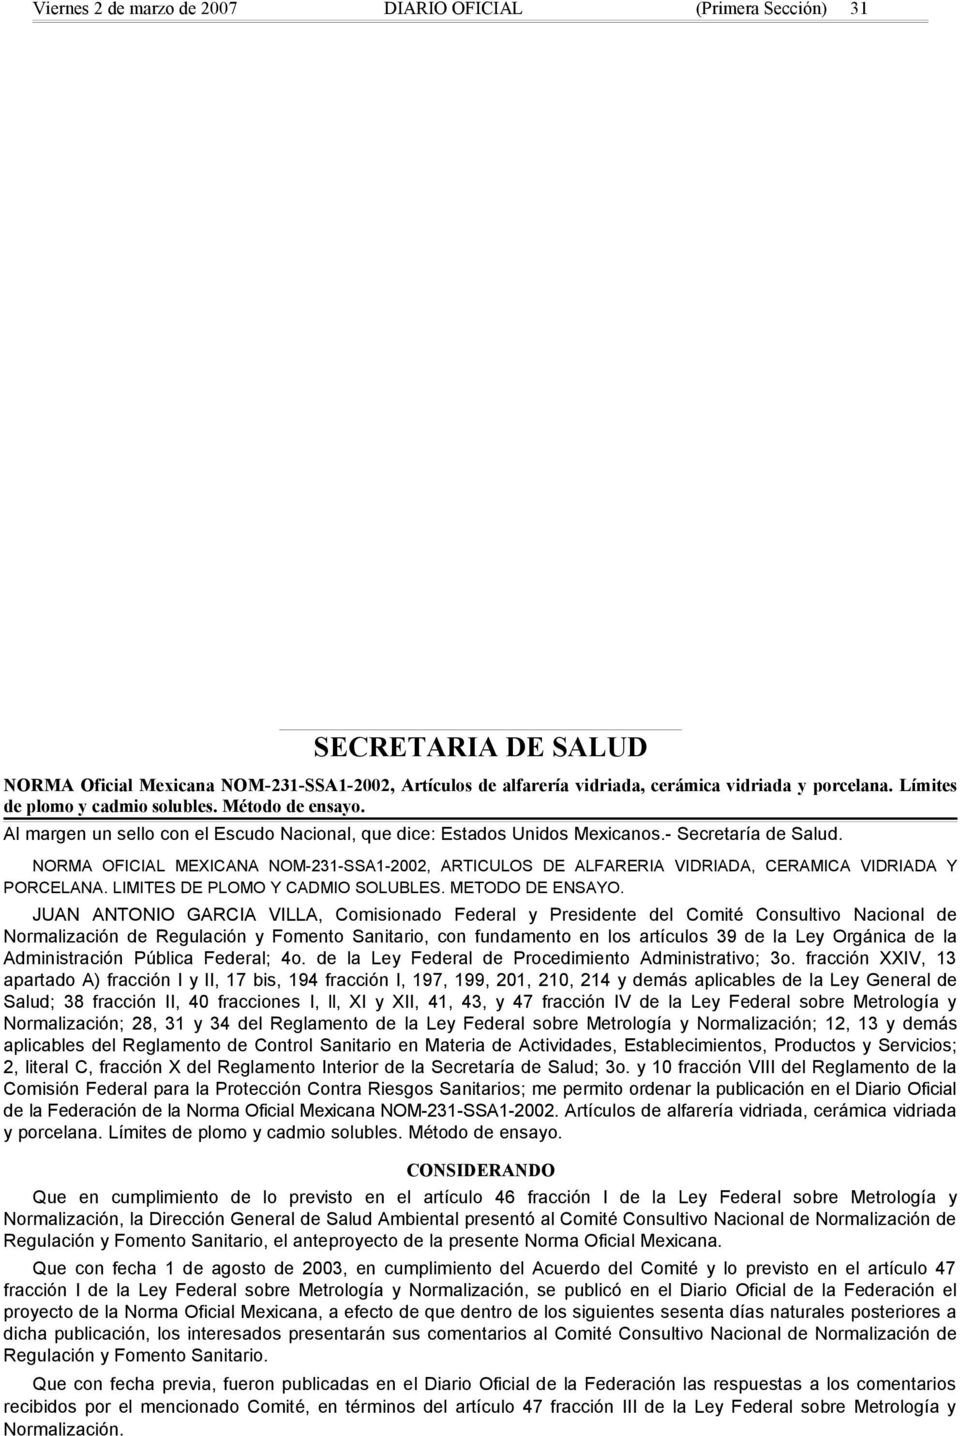 NORMA OFICIAL MEXICANA NOM-231-SSA1-2002, ARTICULOS DE ALFARERIA VIDRIADA, CERAMICA VIDRIADA Y PORCELANA. LIMITES DE PLOMO Y CADMIO SOLUBLES. METODO DE ENSAYO.